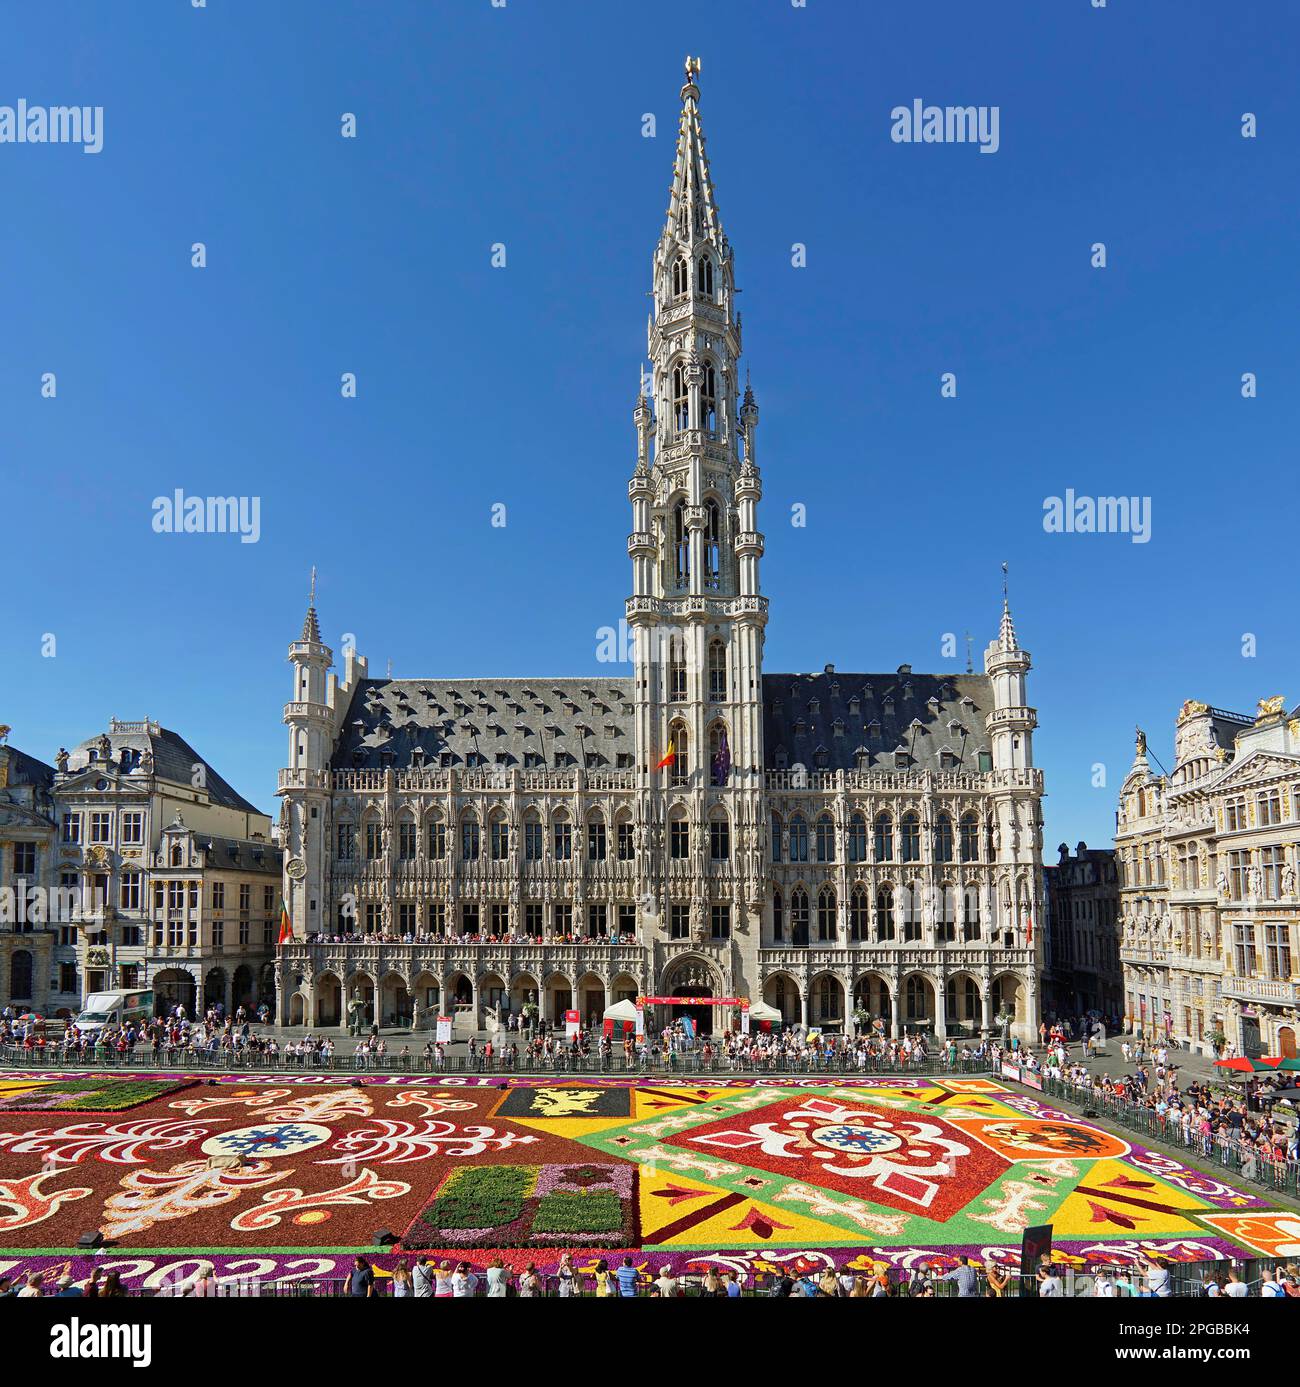 Tapis de fleurs et touristes sur la Grand place (Grand place) en face de l'hôtel de ville historique, Bruxelles, Belgique Banque D'Images